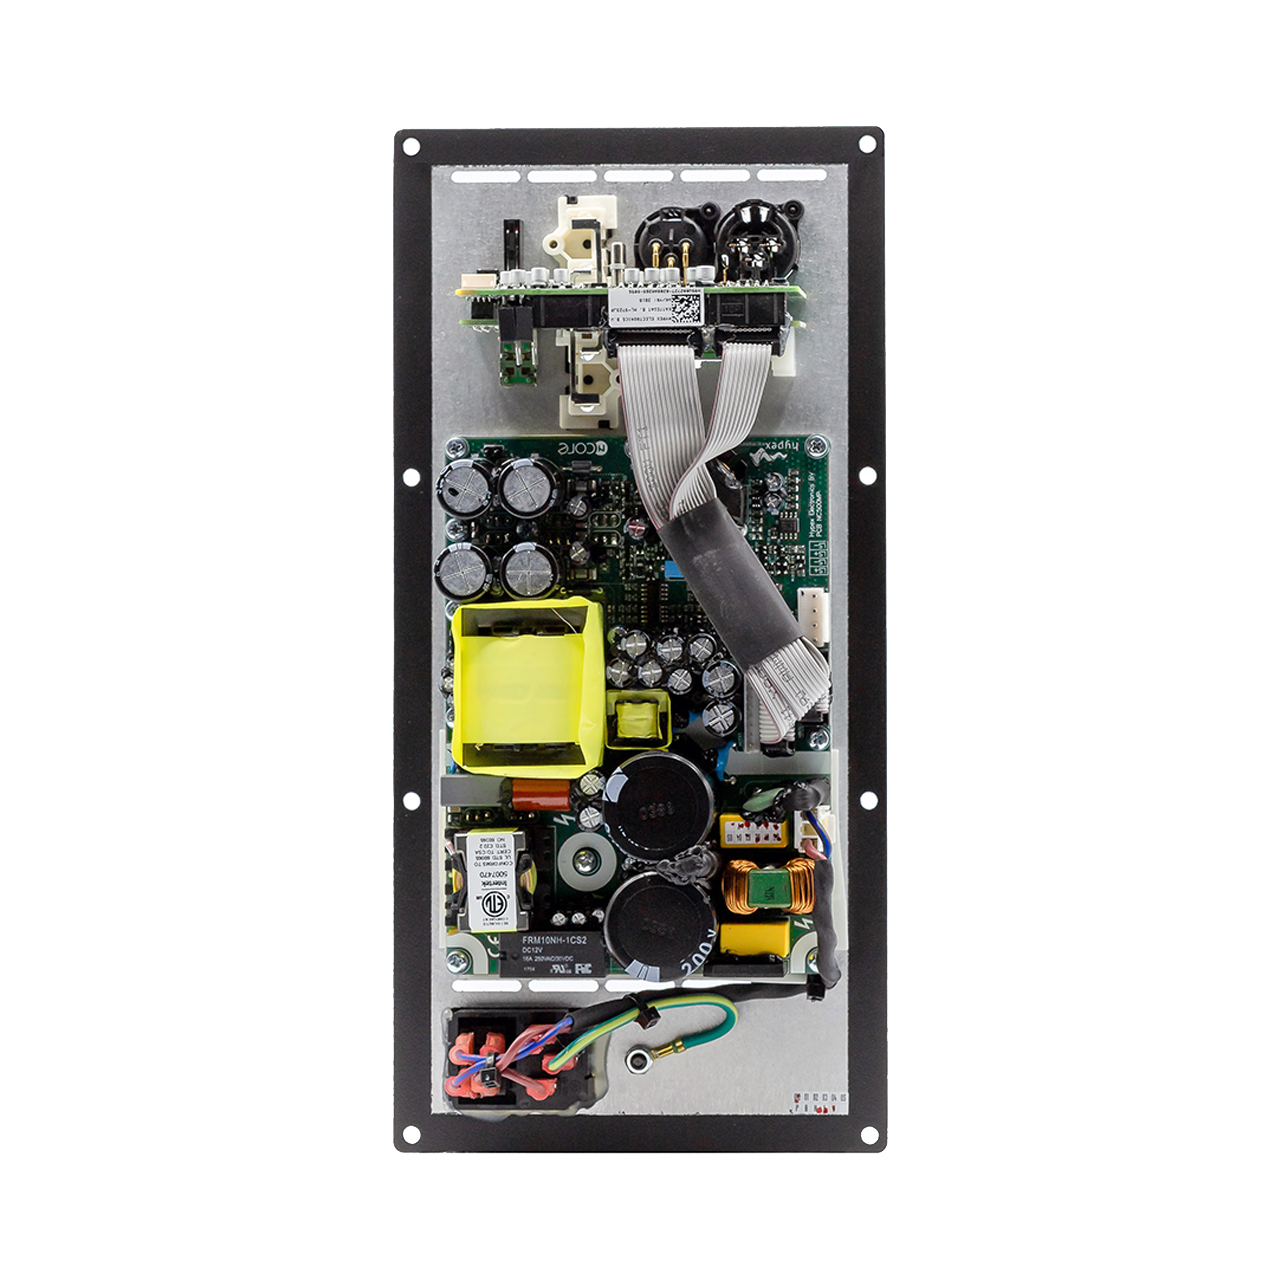 Hypex FA 501 amplifier